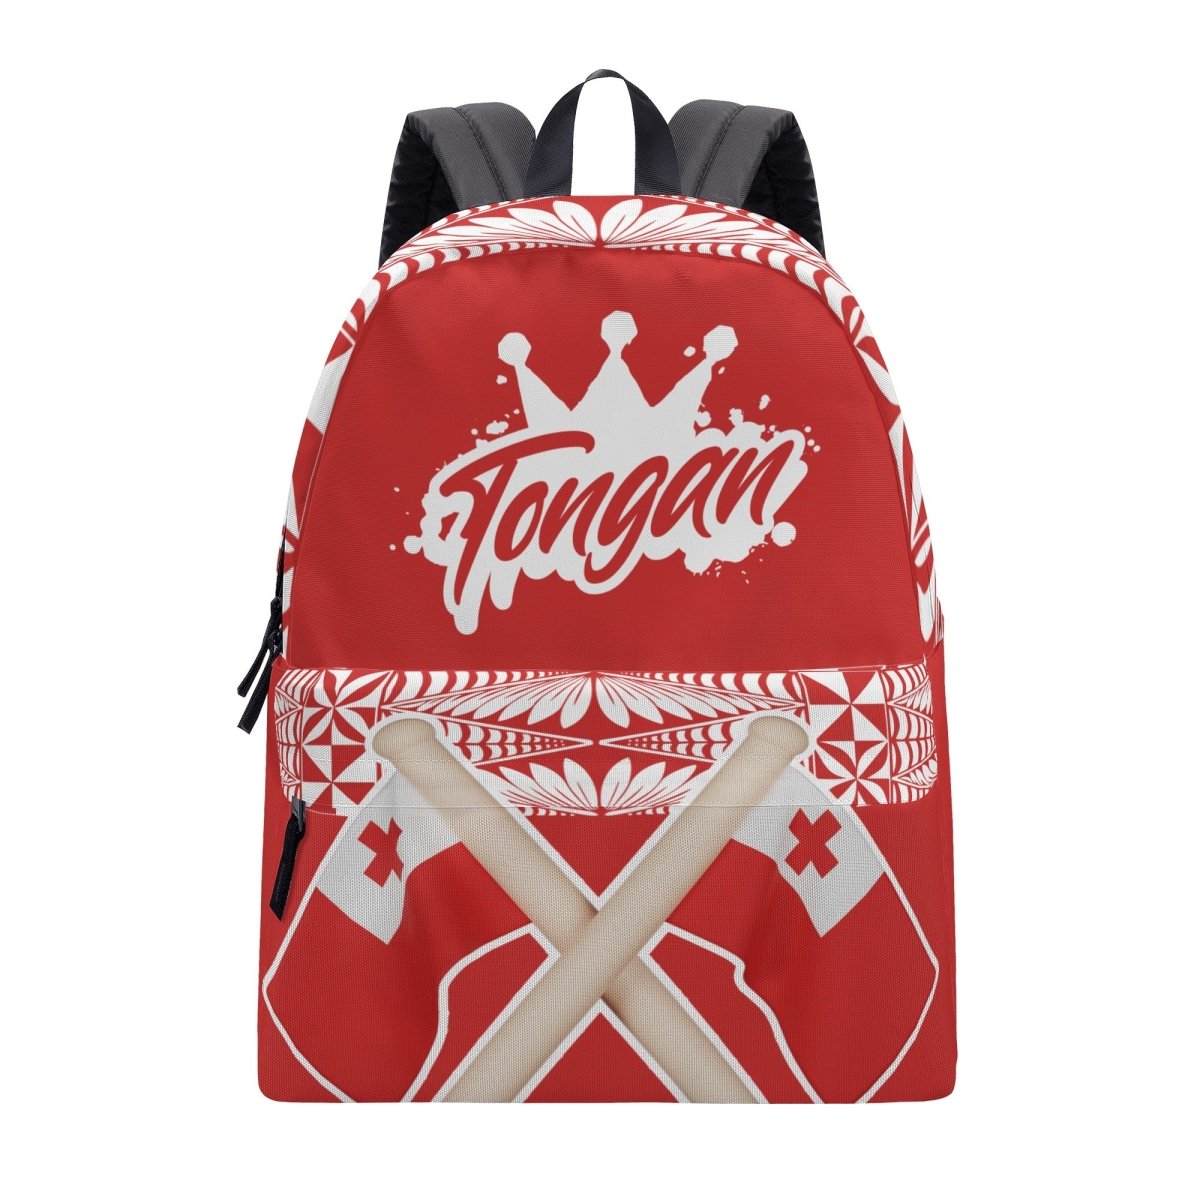 Tongan Crown Backpack - Red - Nesian Kulture